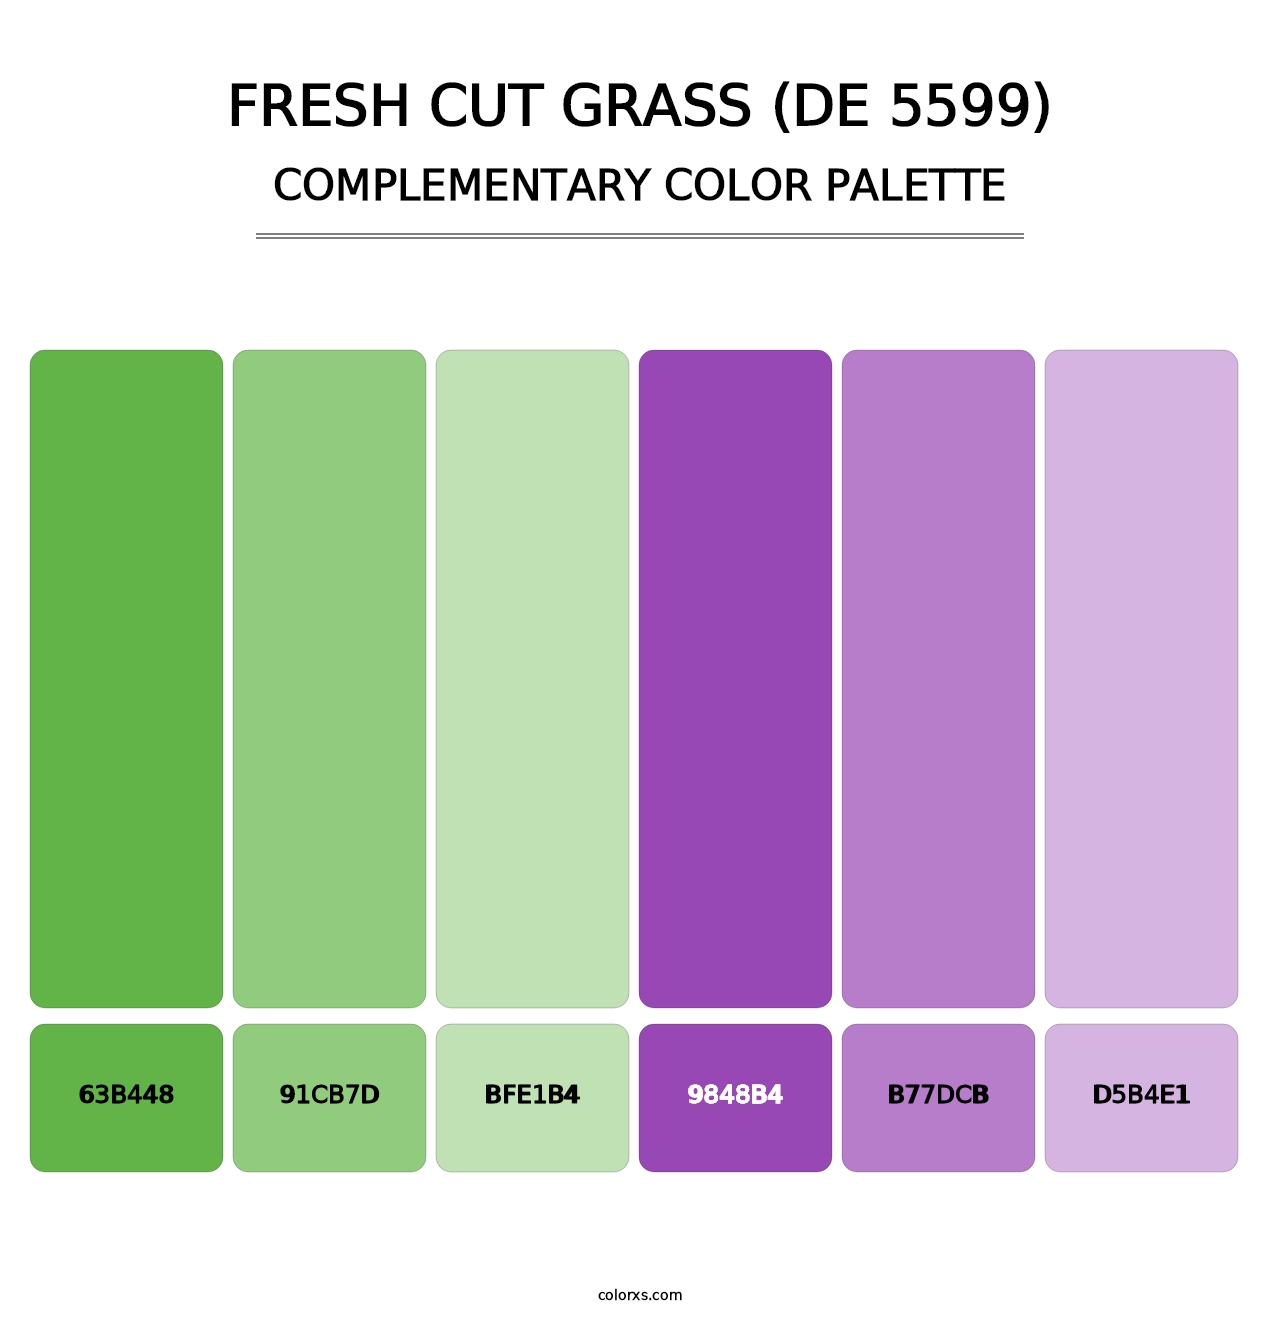 Fresh Cut Grass (DE 5599) - Complementary Color Palette